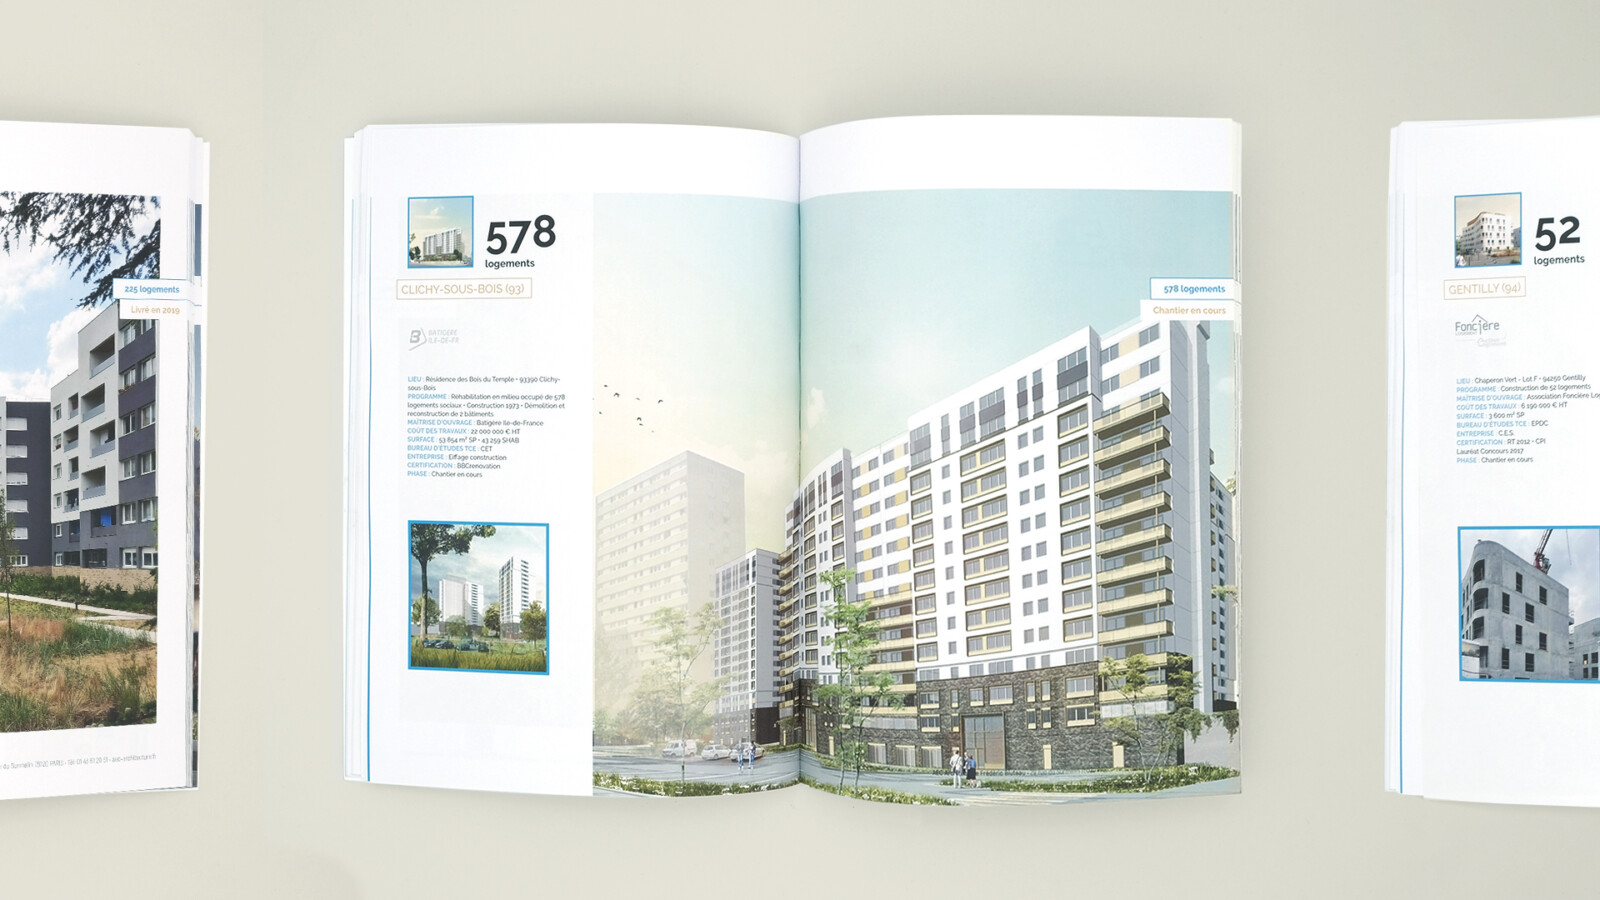 Vue zoomée sur le book projets d’AEC Architecture, ouvert sur une double page intérieure. On peut voir un projet de logements à Clichy-sous-Bois.